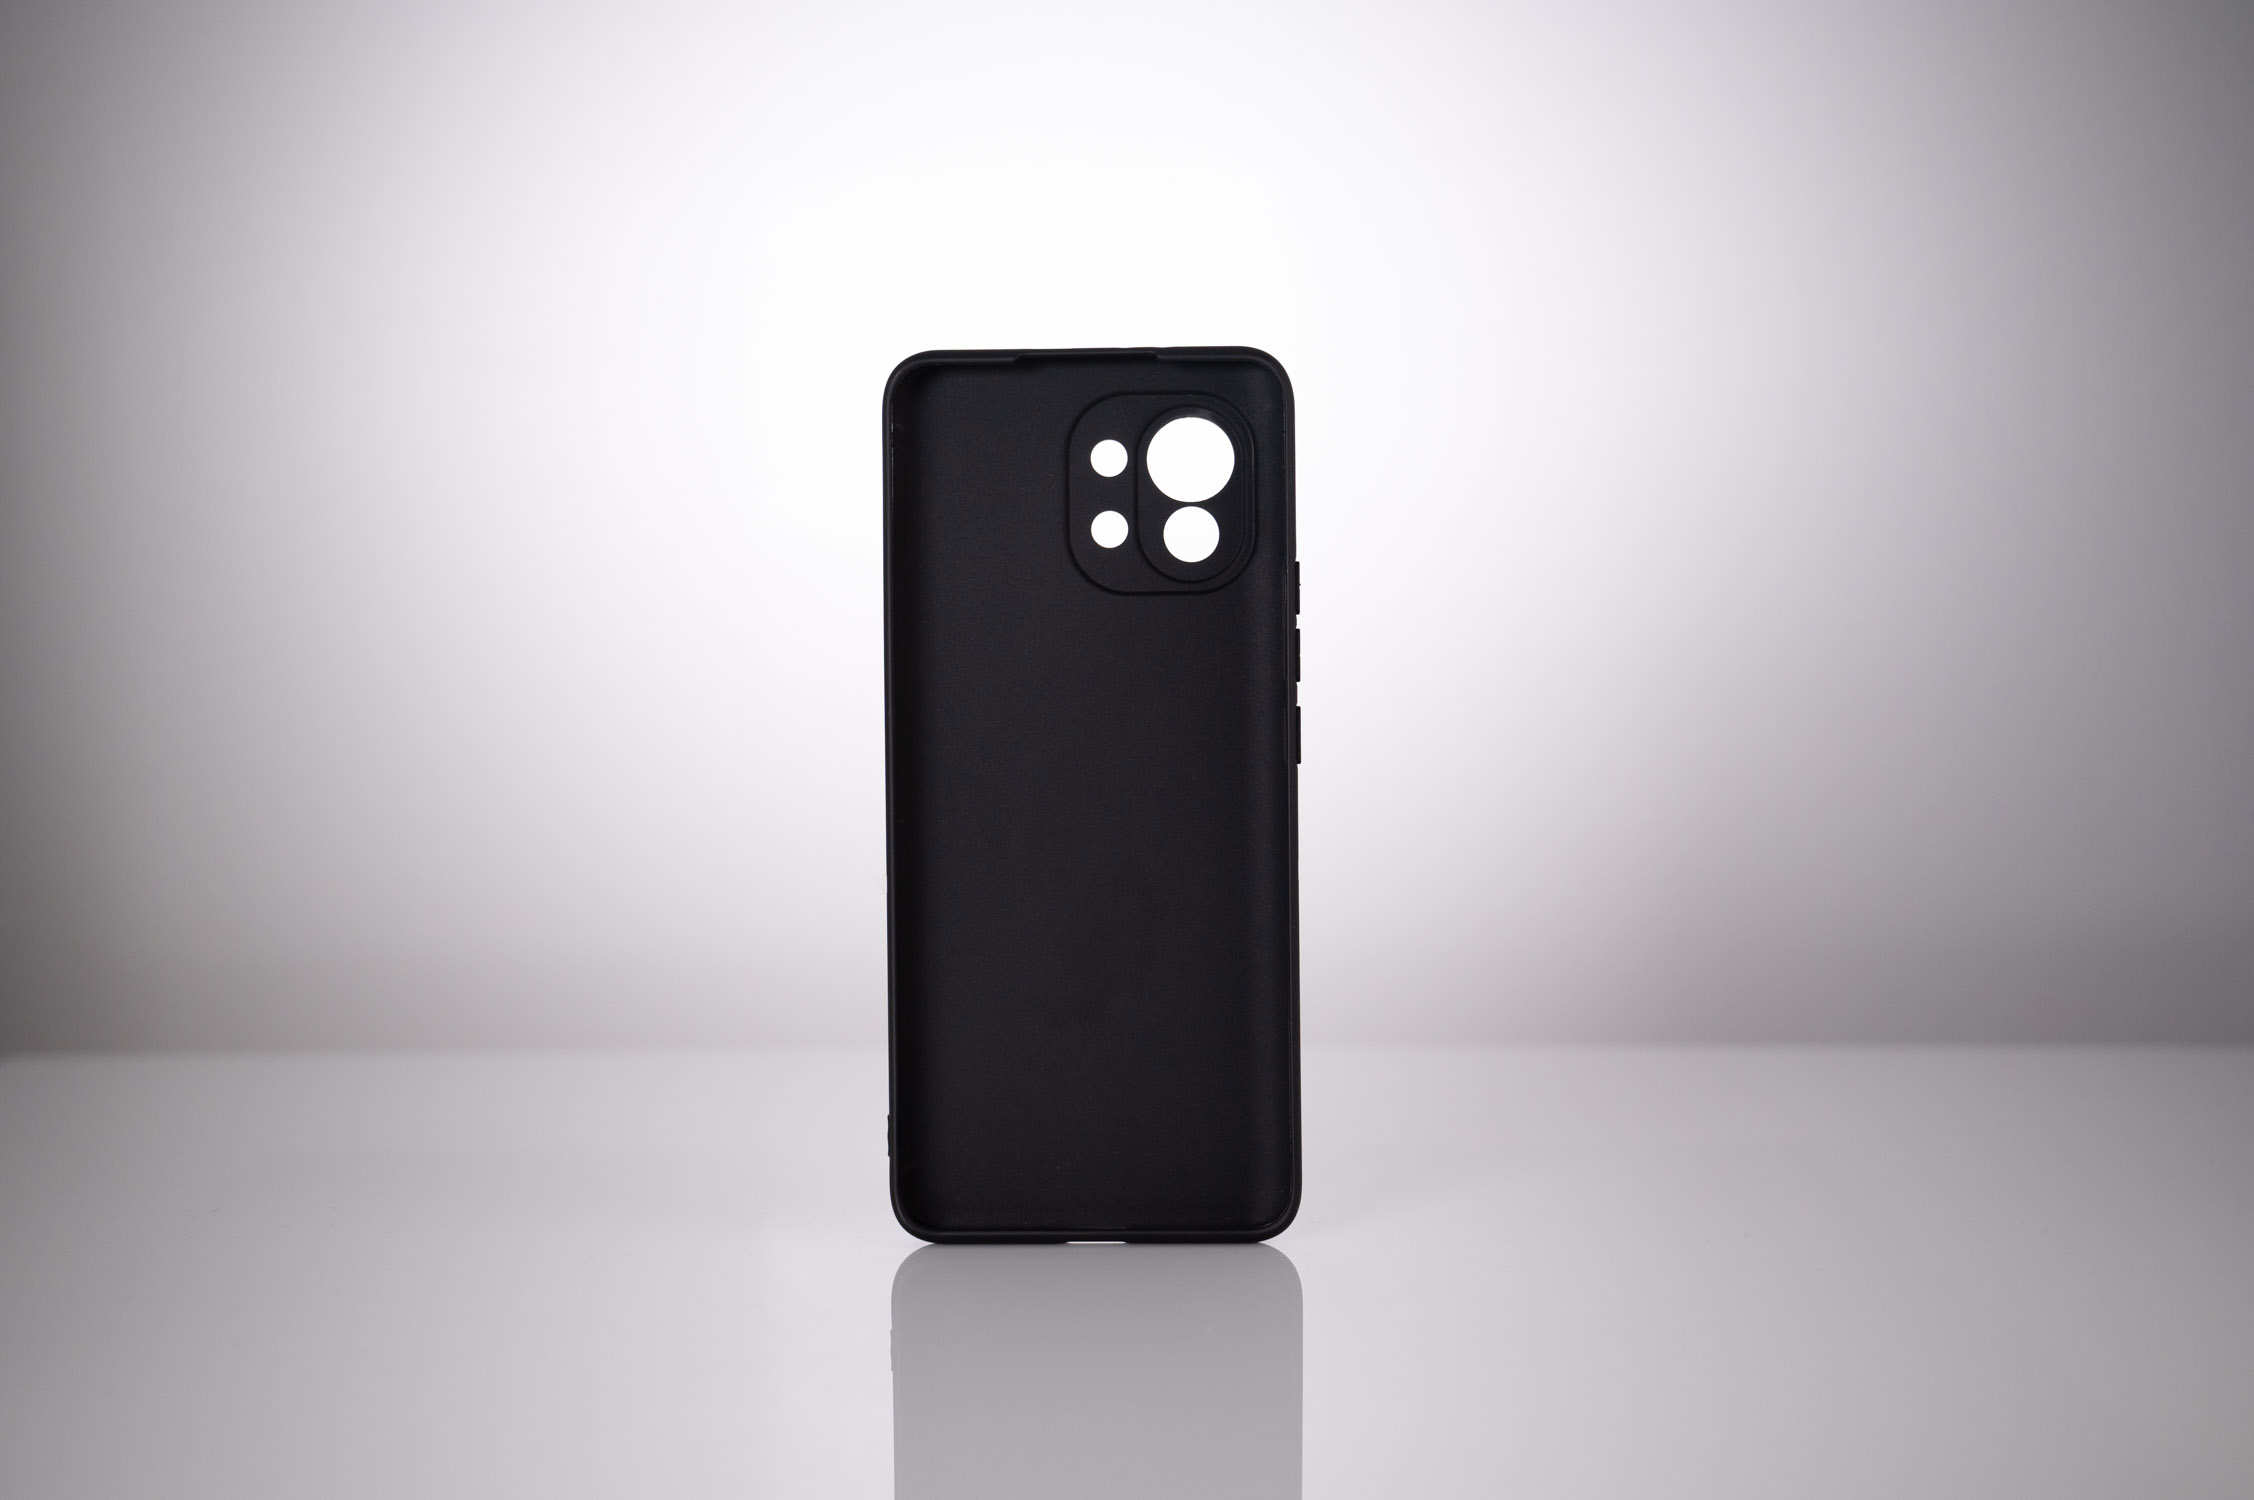 HUSA SMARTPHONE Spacer pentru Xiaomi Mi 11 5G, grosime 1.5mm, material flexibil TPU, negru "SPPC-XI-MI-115G-TPU" thumb